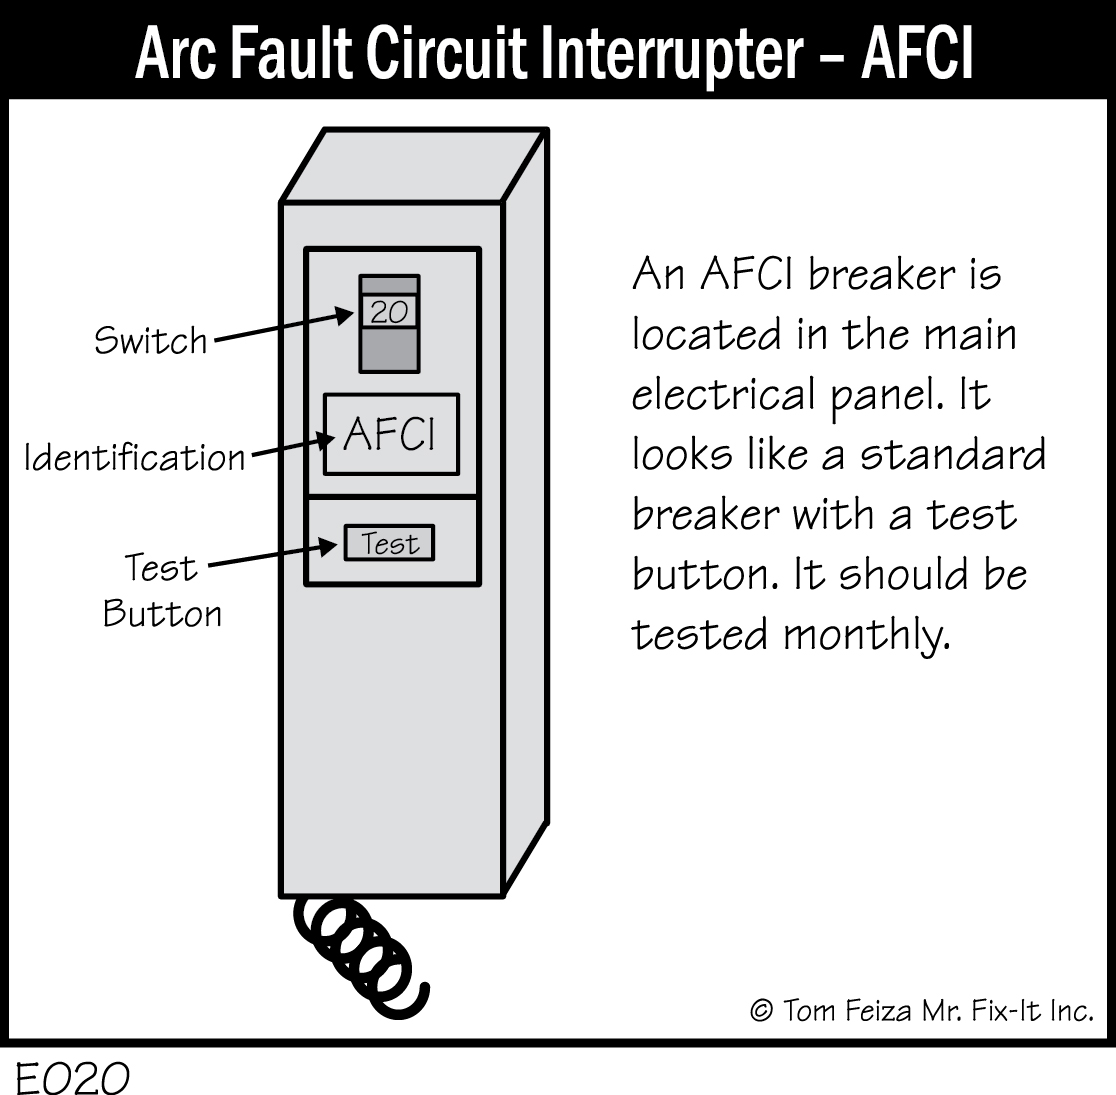 E020 - Arc Fault Circuit Interrupter (AFCI)